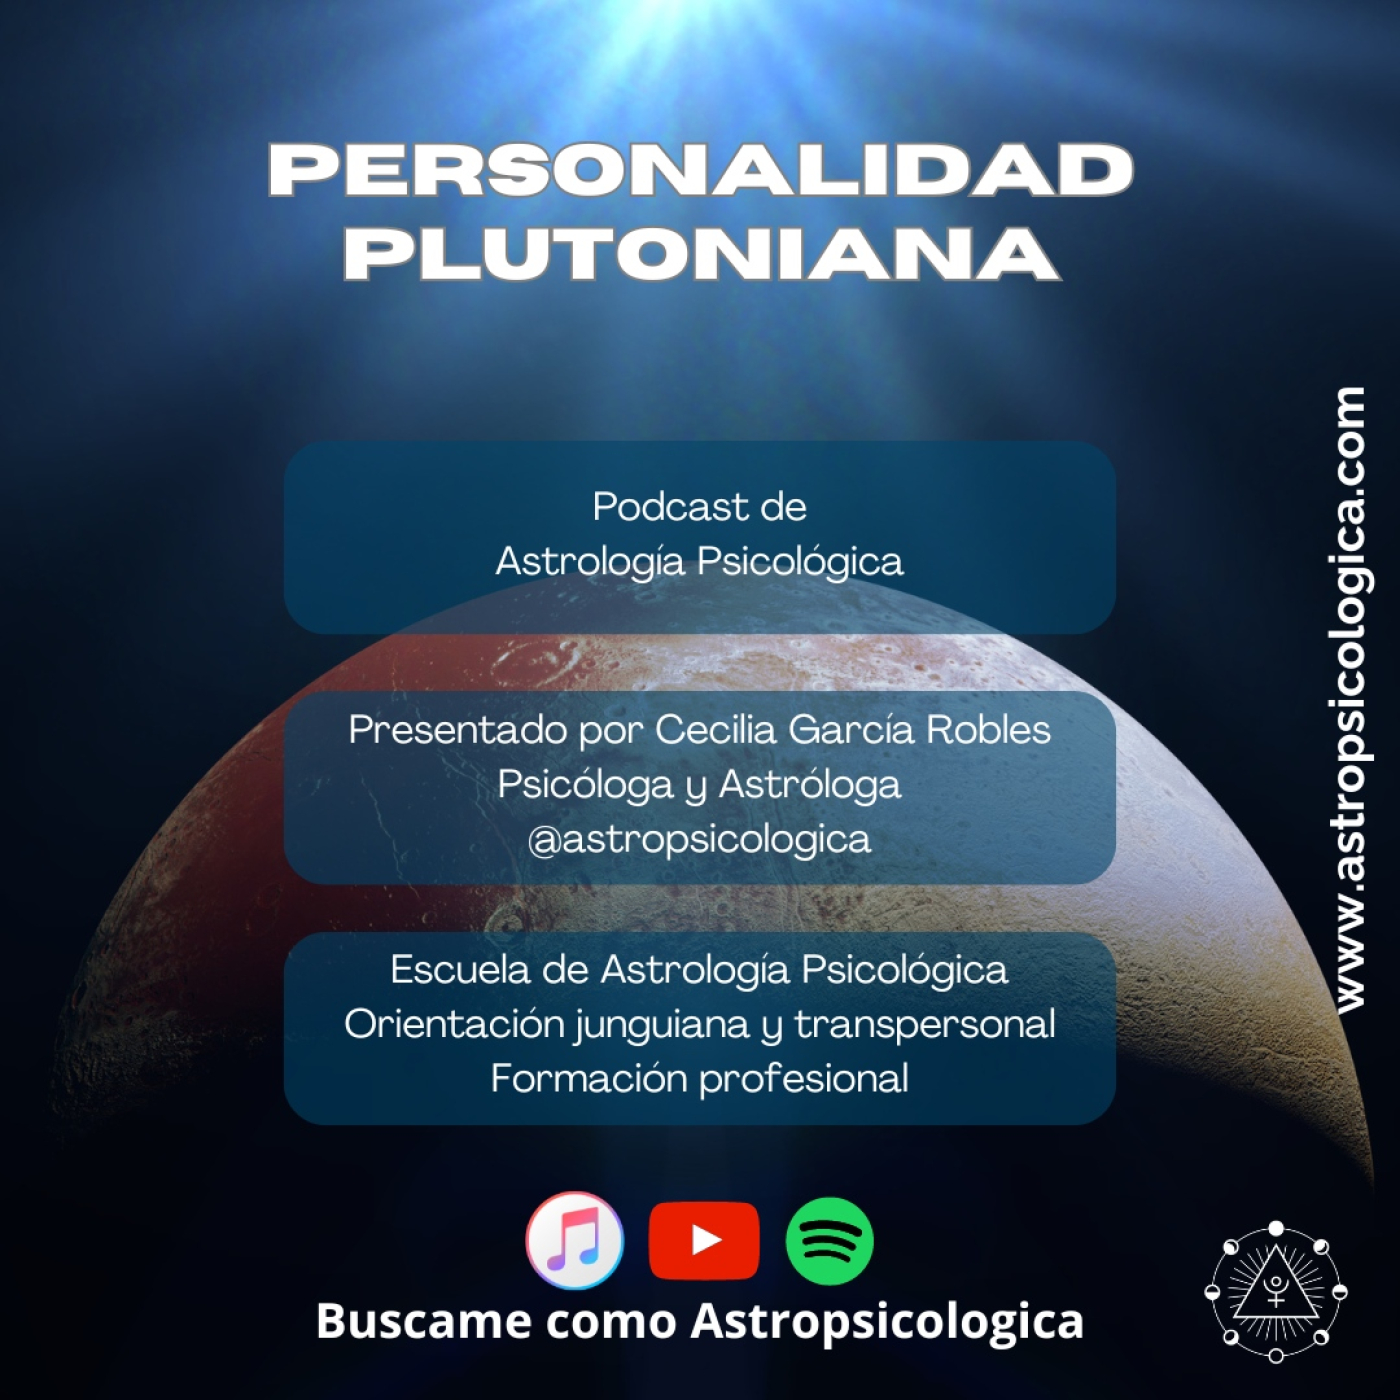 Podcast: ¿Tienes una personalidad plutoniana?